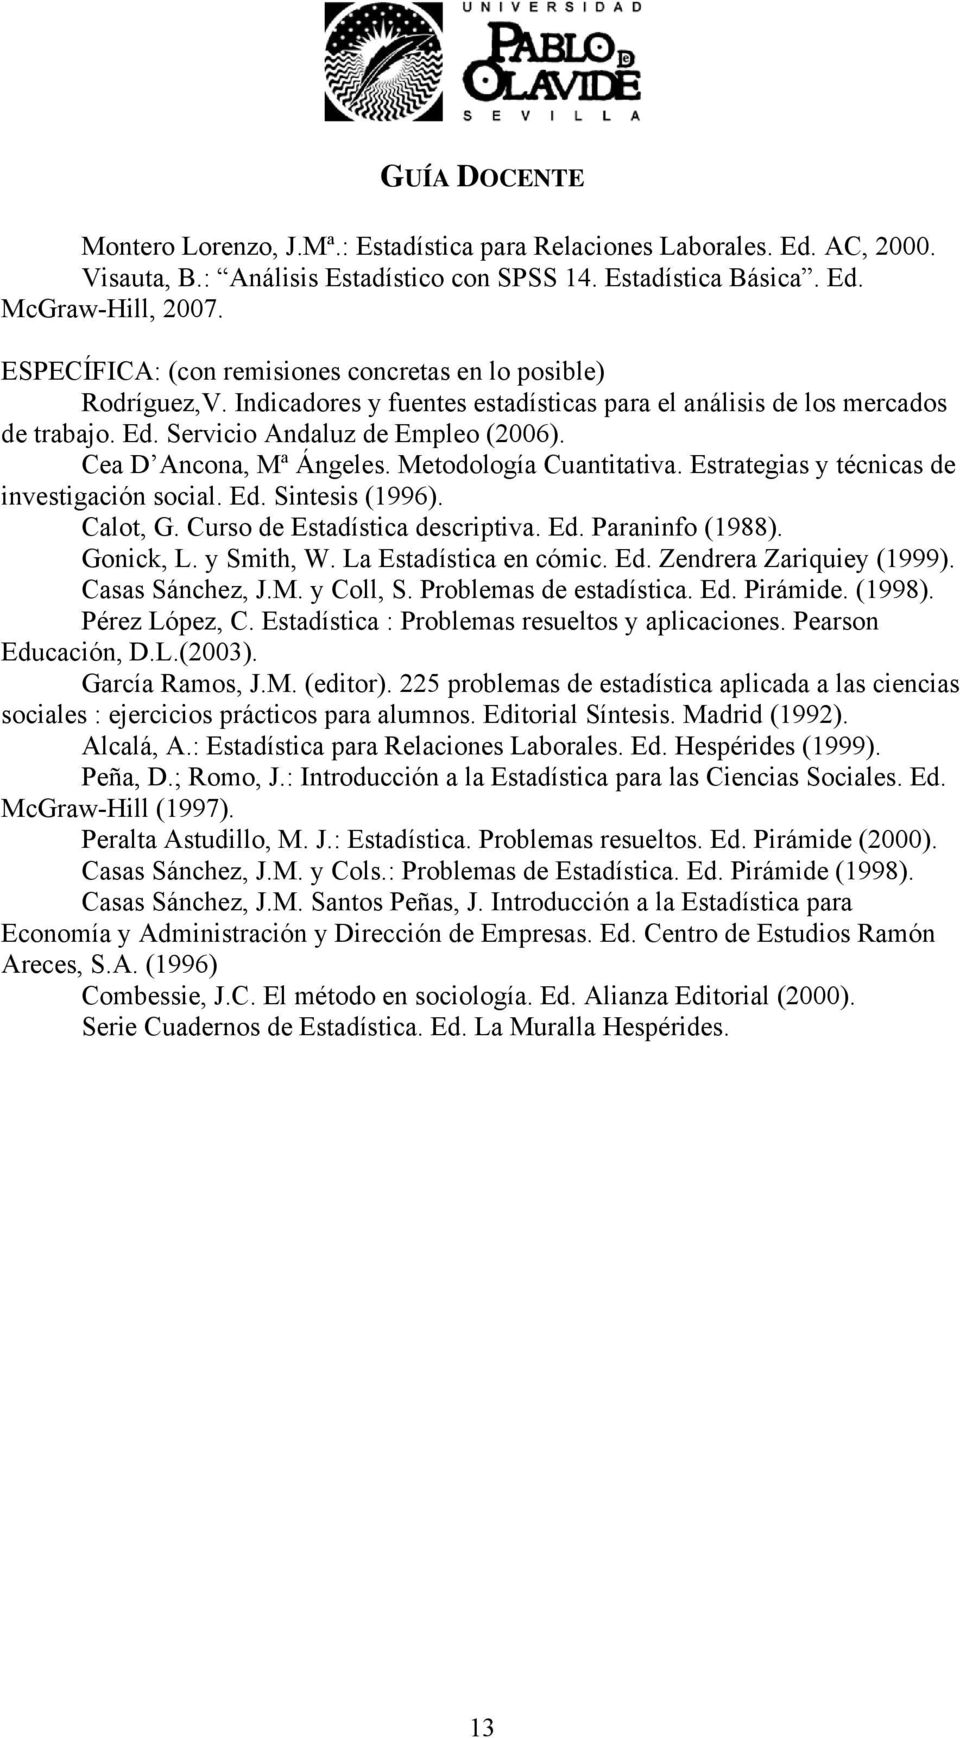 Cea D Ancona, Mª Ángeles. Metodología Cuantitativa. Estrategias y técnicas de investigación social. Ed. Sintesis (1996). Calot, G. Curso de Estadística descriptiva. Ed. Paraninfo (1988). Gonick, L.